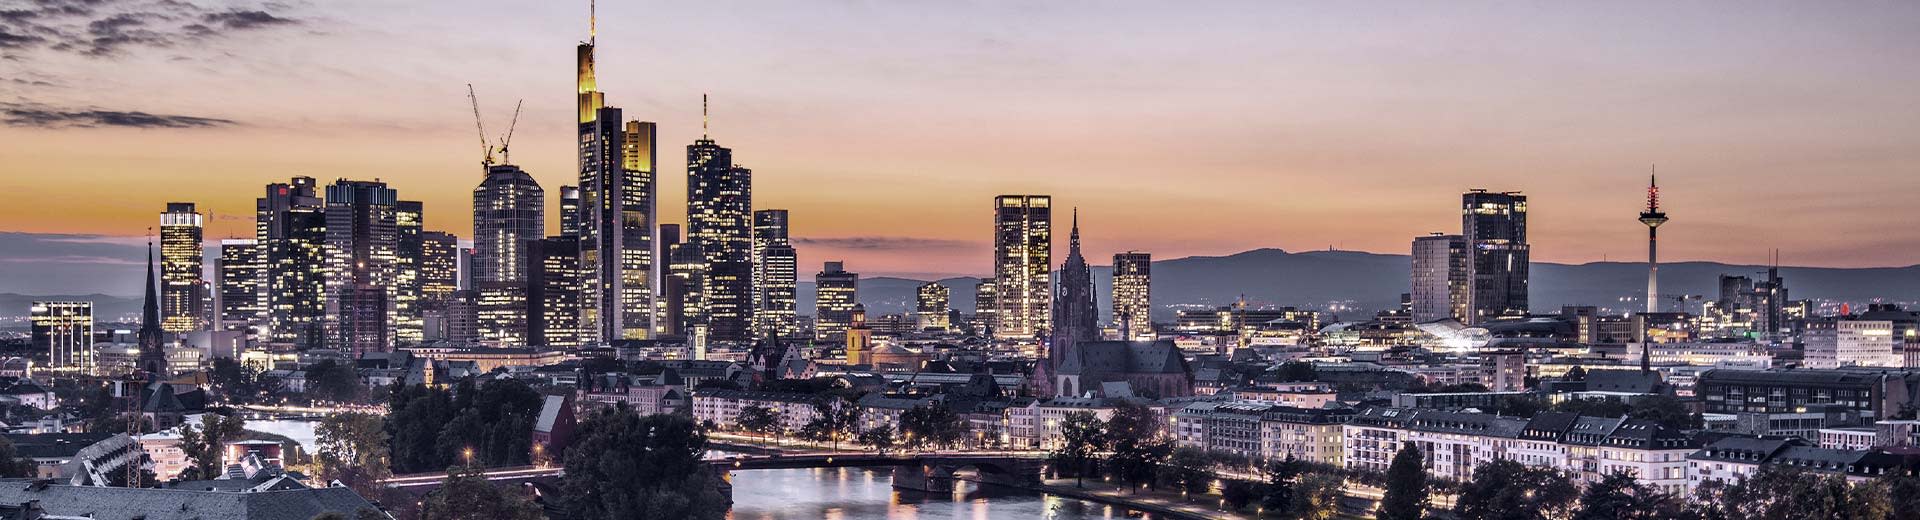 Die drohenden Wolkenkratzer von Frankfurts Finanzviertel bei Sonnenuntergang.